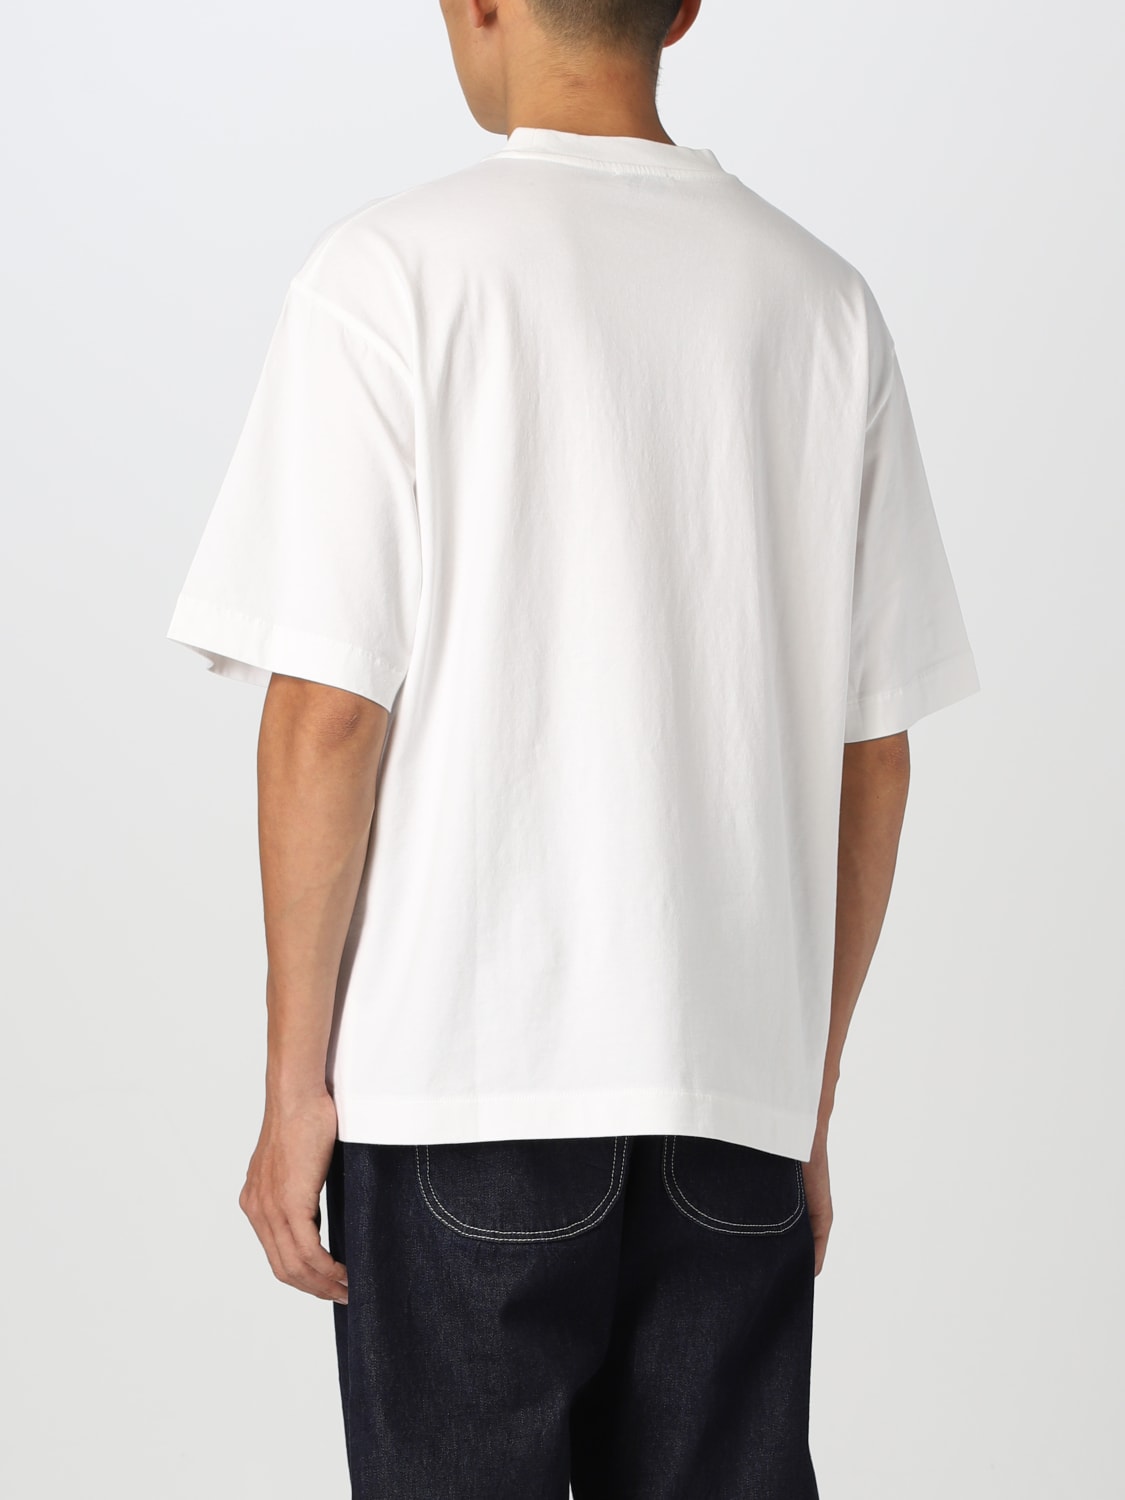 OFF-WHITE：Tシャツ メンズ - ホワイト | GIGLIO.COMオンラインのOff ...